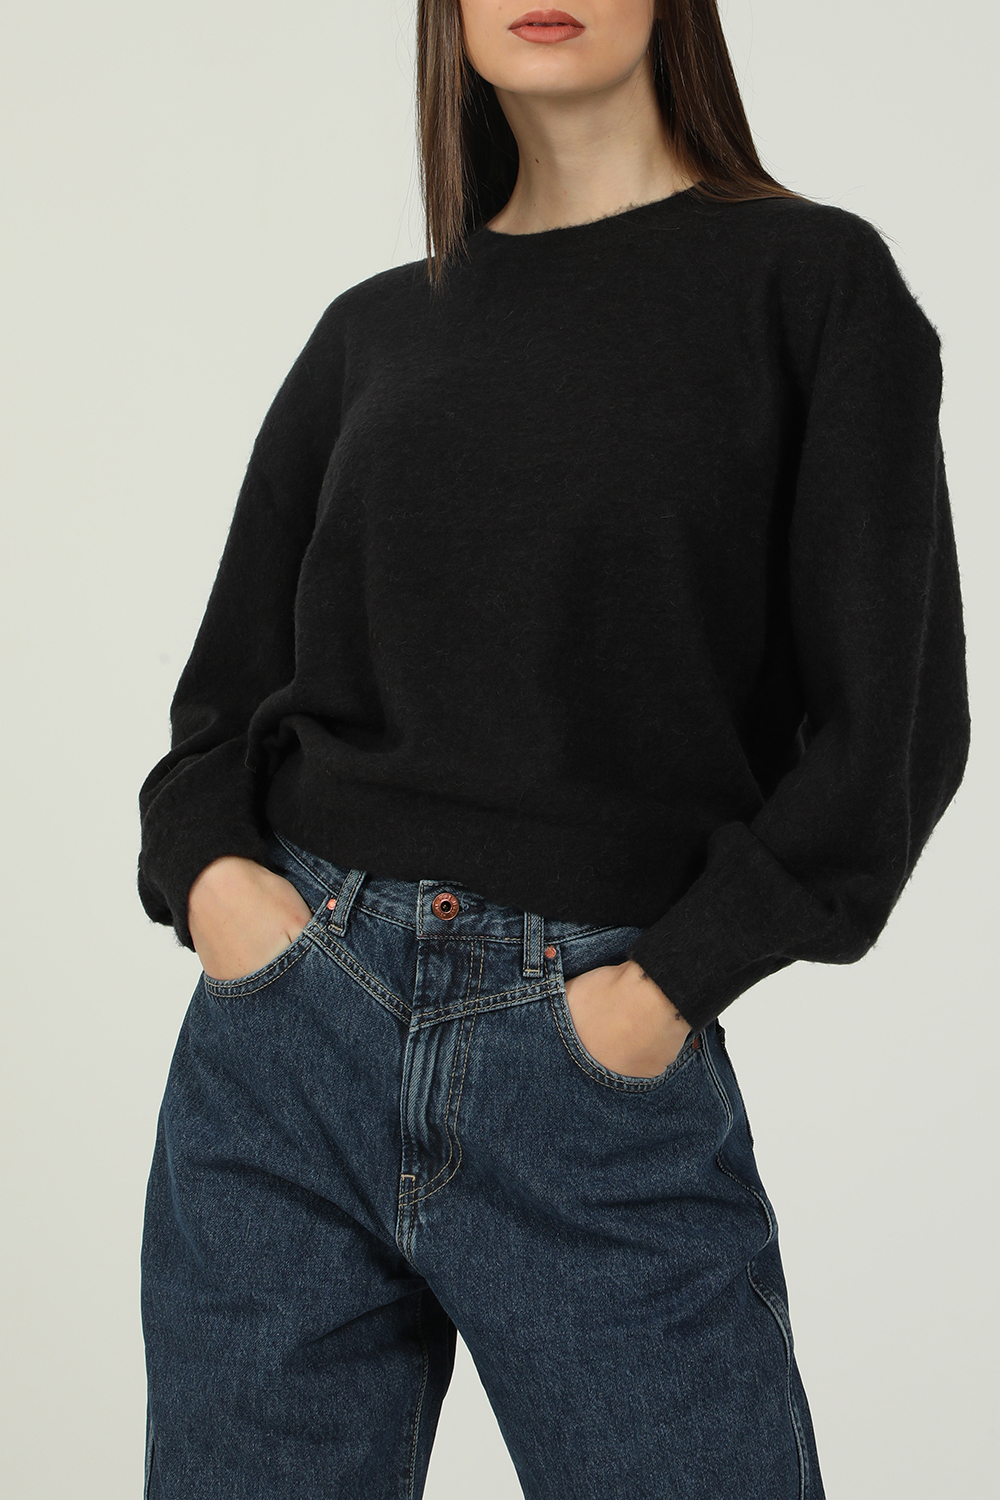 Γυναικεία/Ρούχα/Πλεκτά-Ζακέτες/Πουλόβερ AMERICAN VINTAGE - Γυναικεία πλεκτή μπλούζα AMERICAN VINTAGE μαύρη